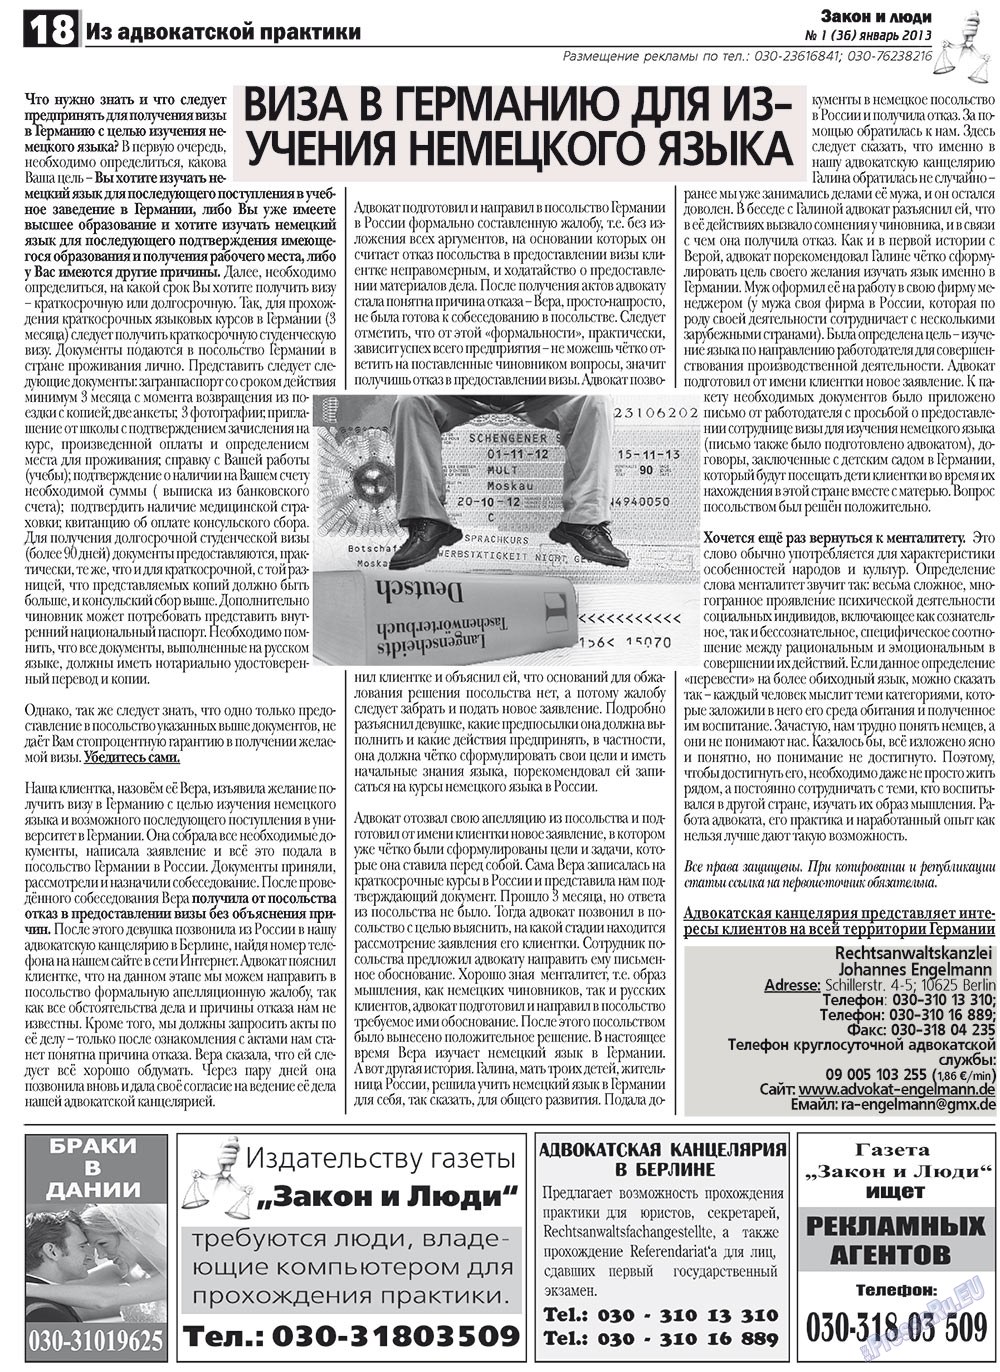 Закон и люди, газета. 2013 №1 стр.18